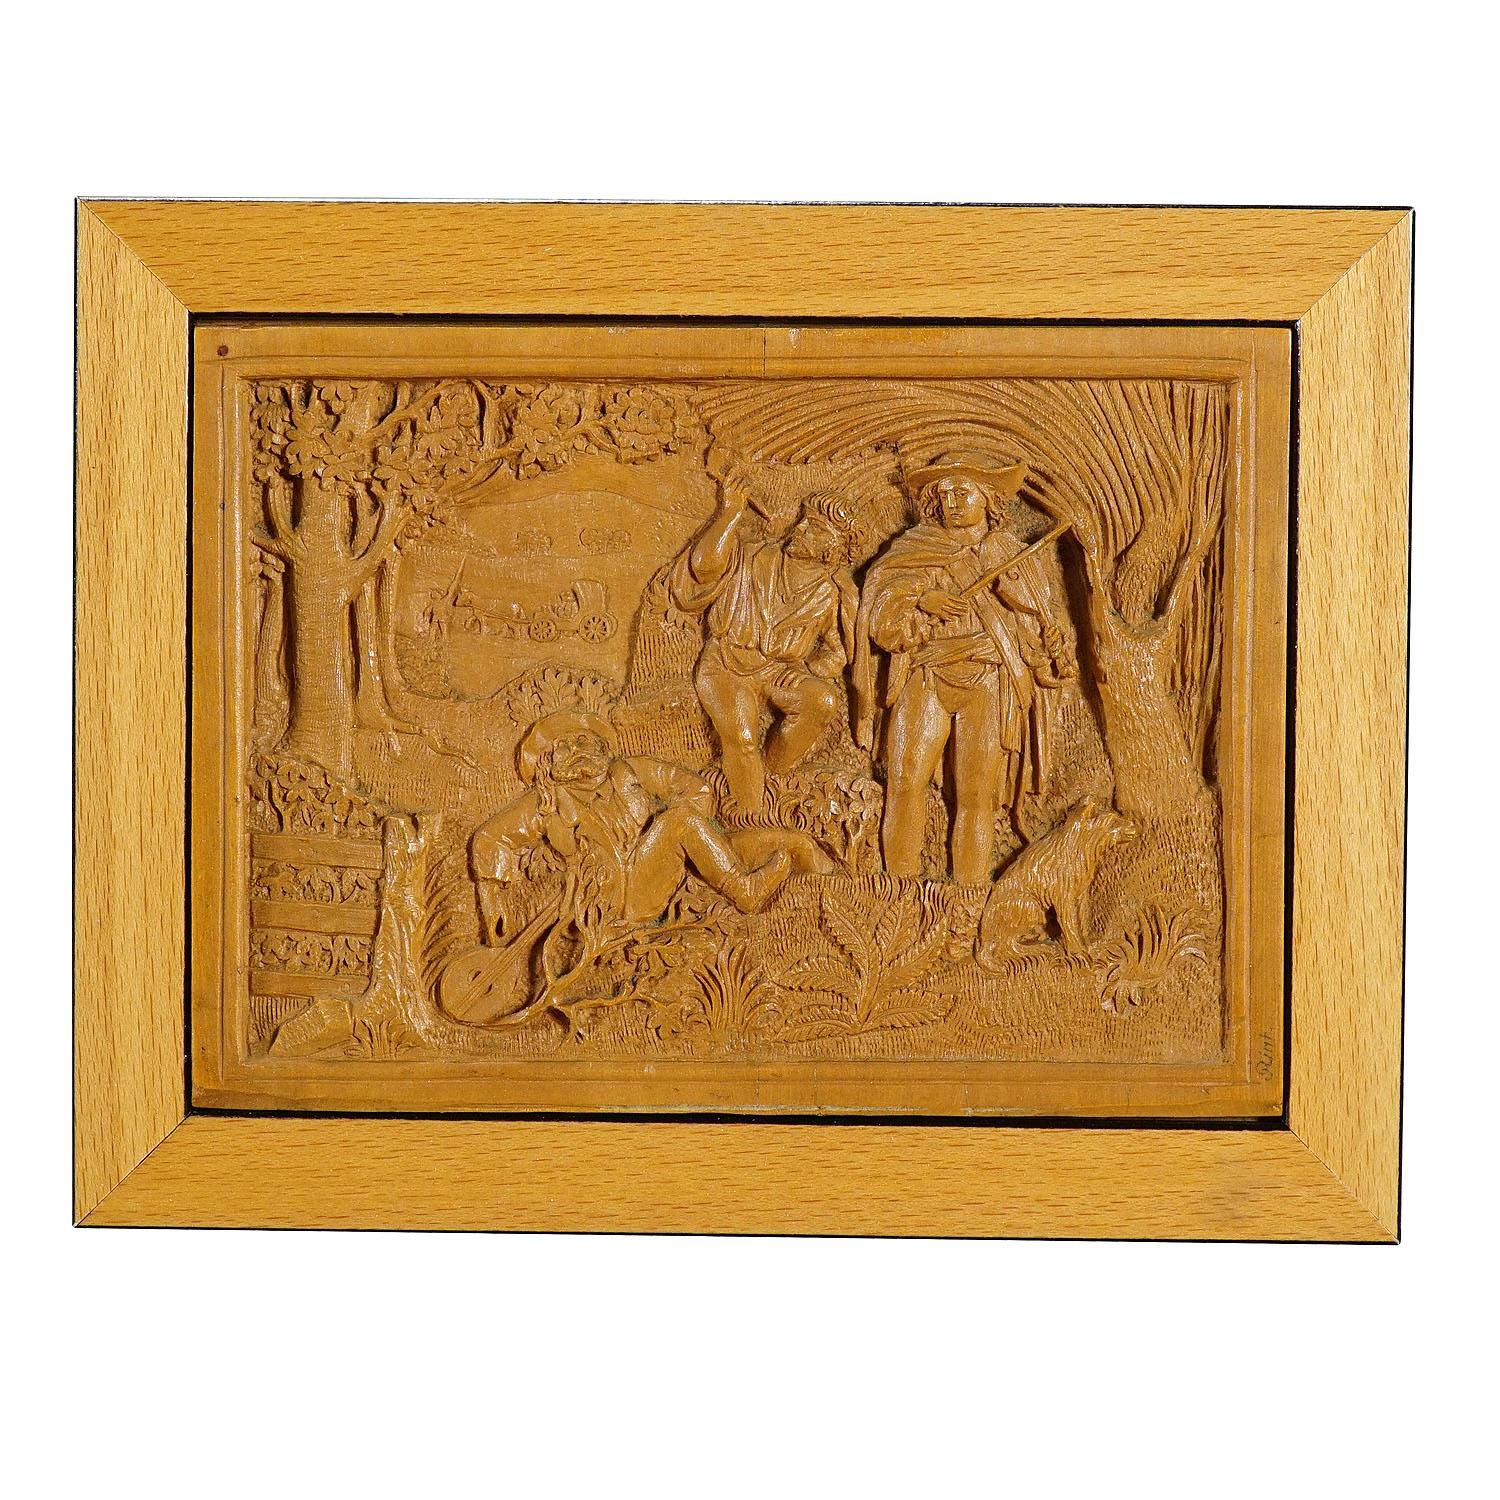 Plaque micro- sculptée en bois de Johann Rint, vers 1880

Une petite plaque murale avec des sculptures en relief détaillées travaillées en bois de tilleul par Johann Rint vers 1880. 1880. Représentant probablement une scène d'après des récits de